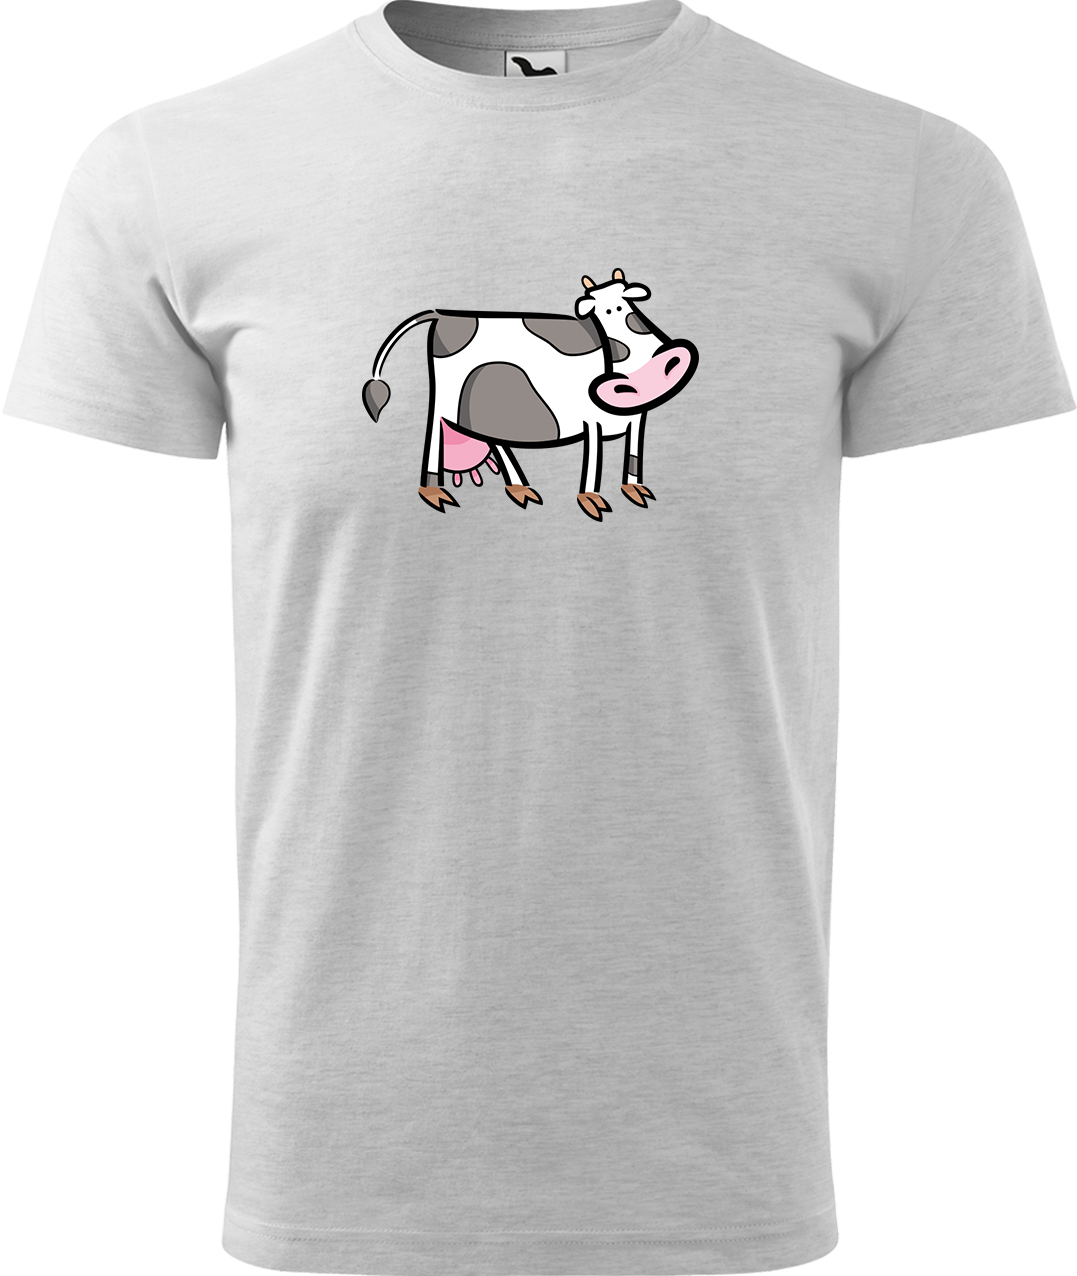 Pánské tričko s krávou - Kravička Velikost: M, Barva: Světle šedý melír (03), Střih: pánský